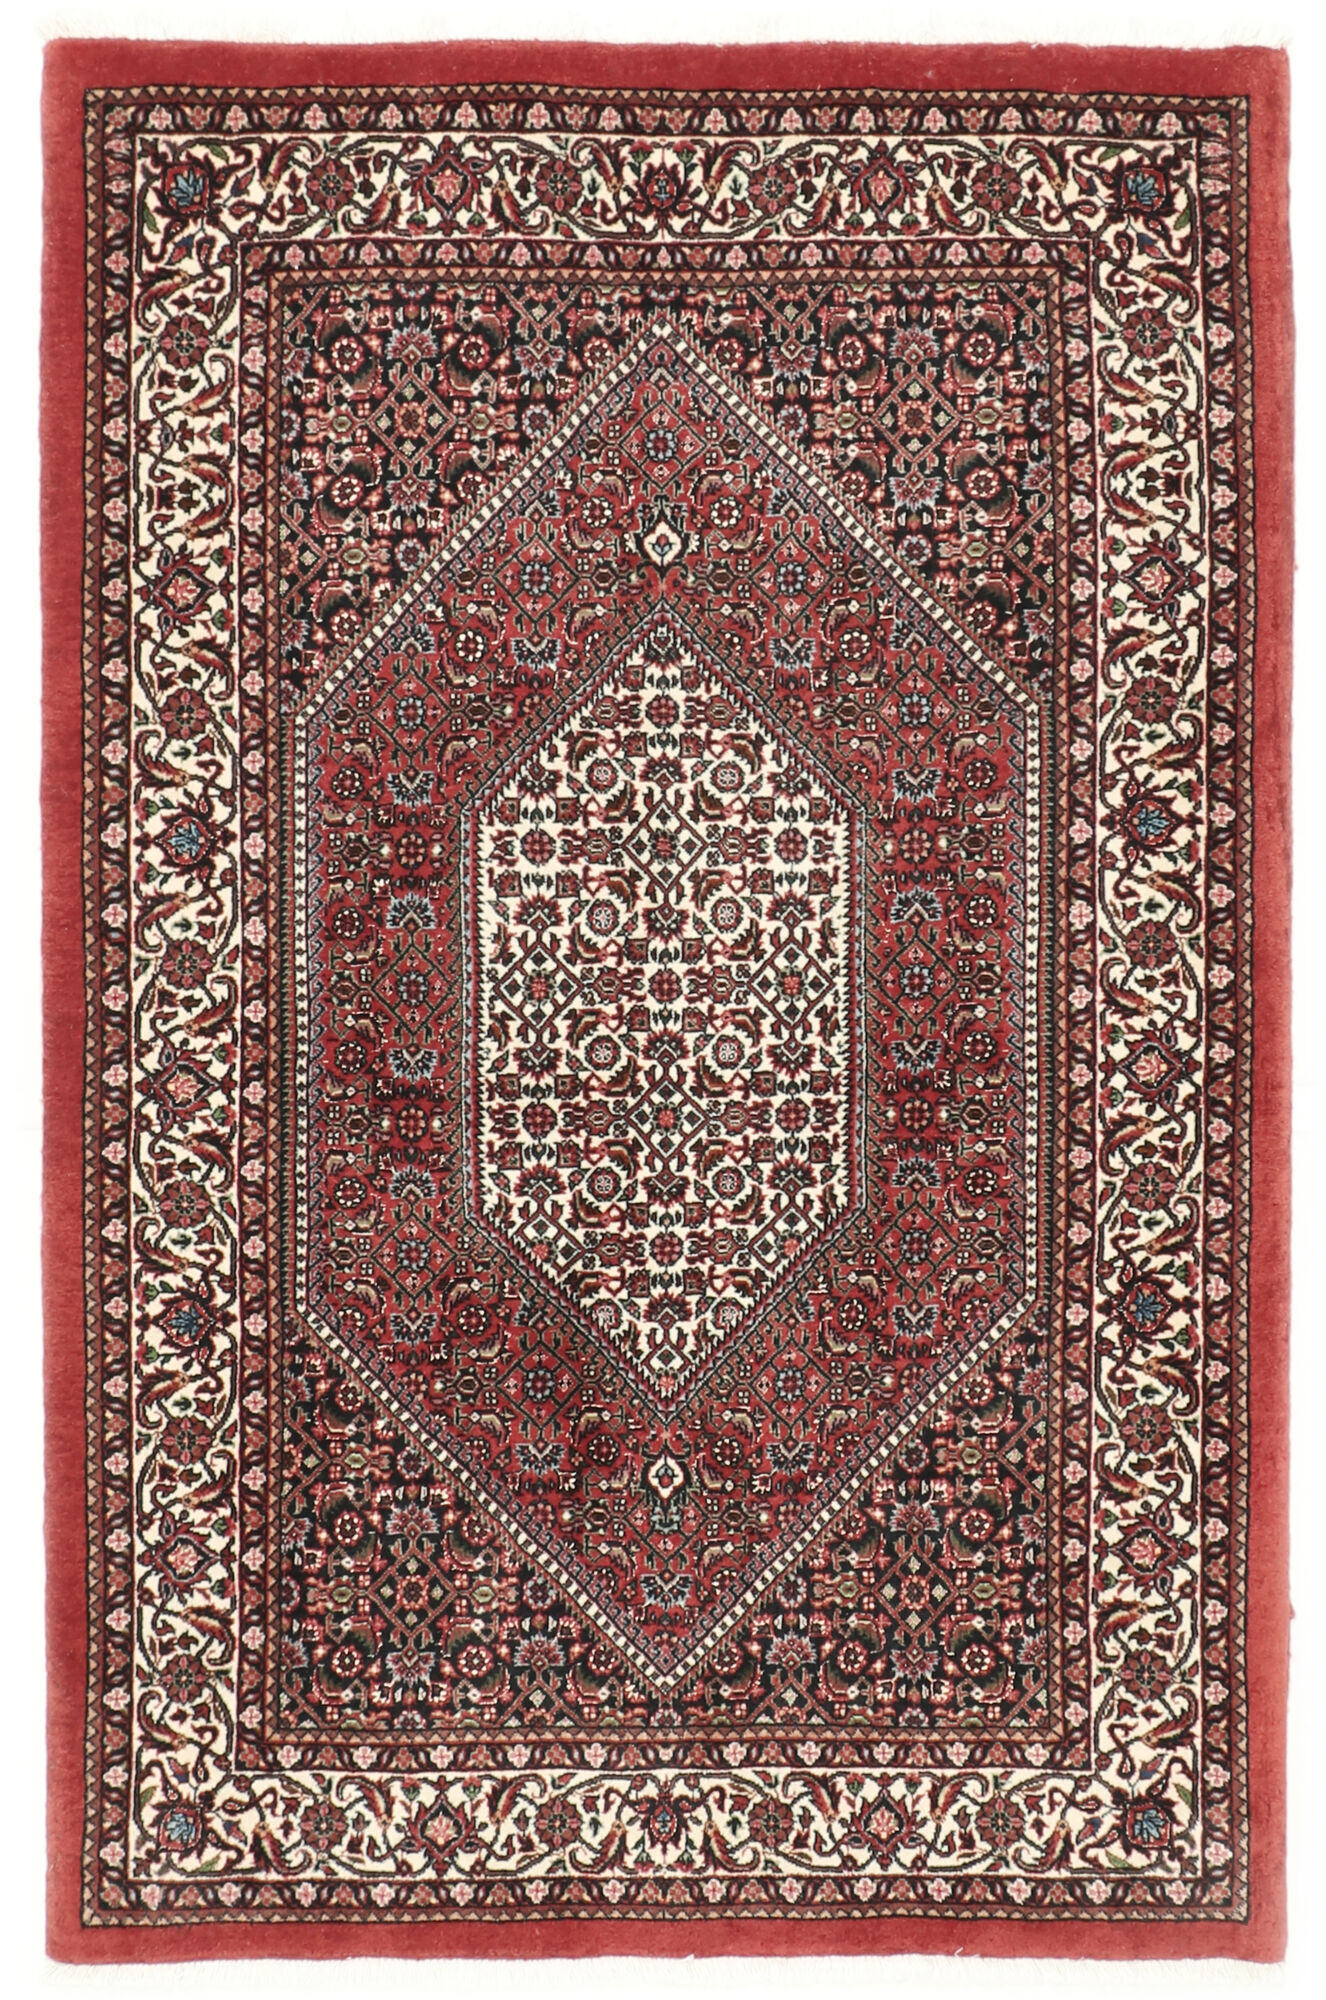 Annodato a mano. Provenienza: Persia / Iran Bidjar con seta Tappeto 95x146